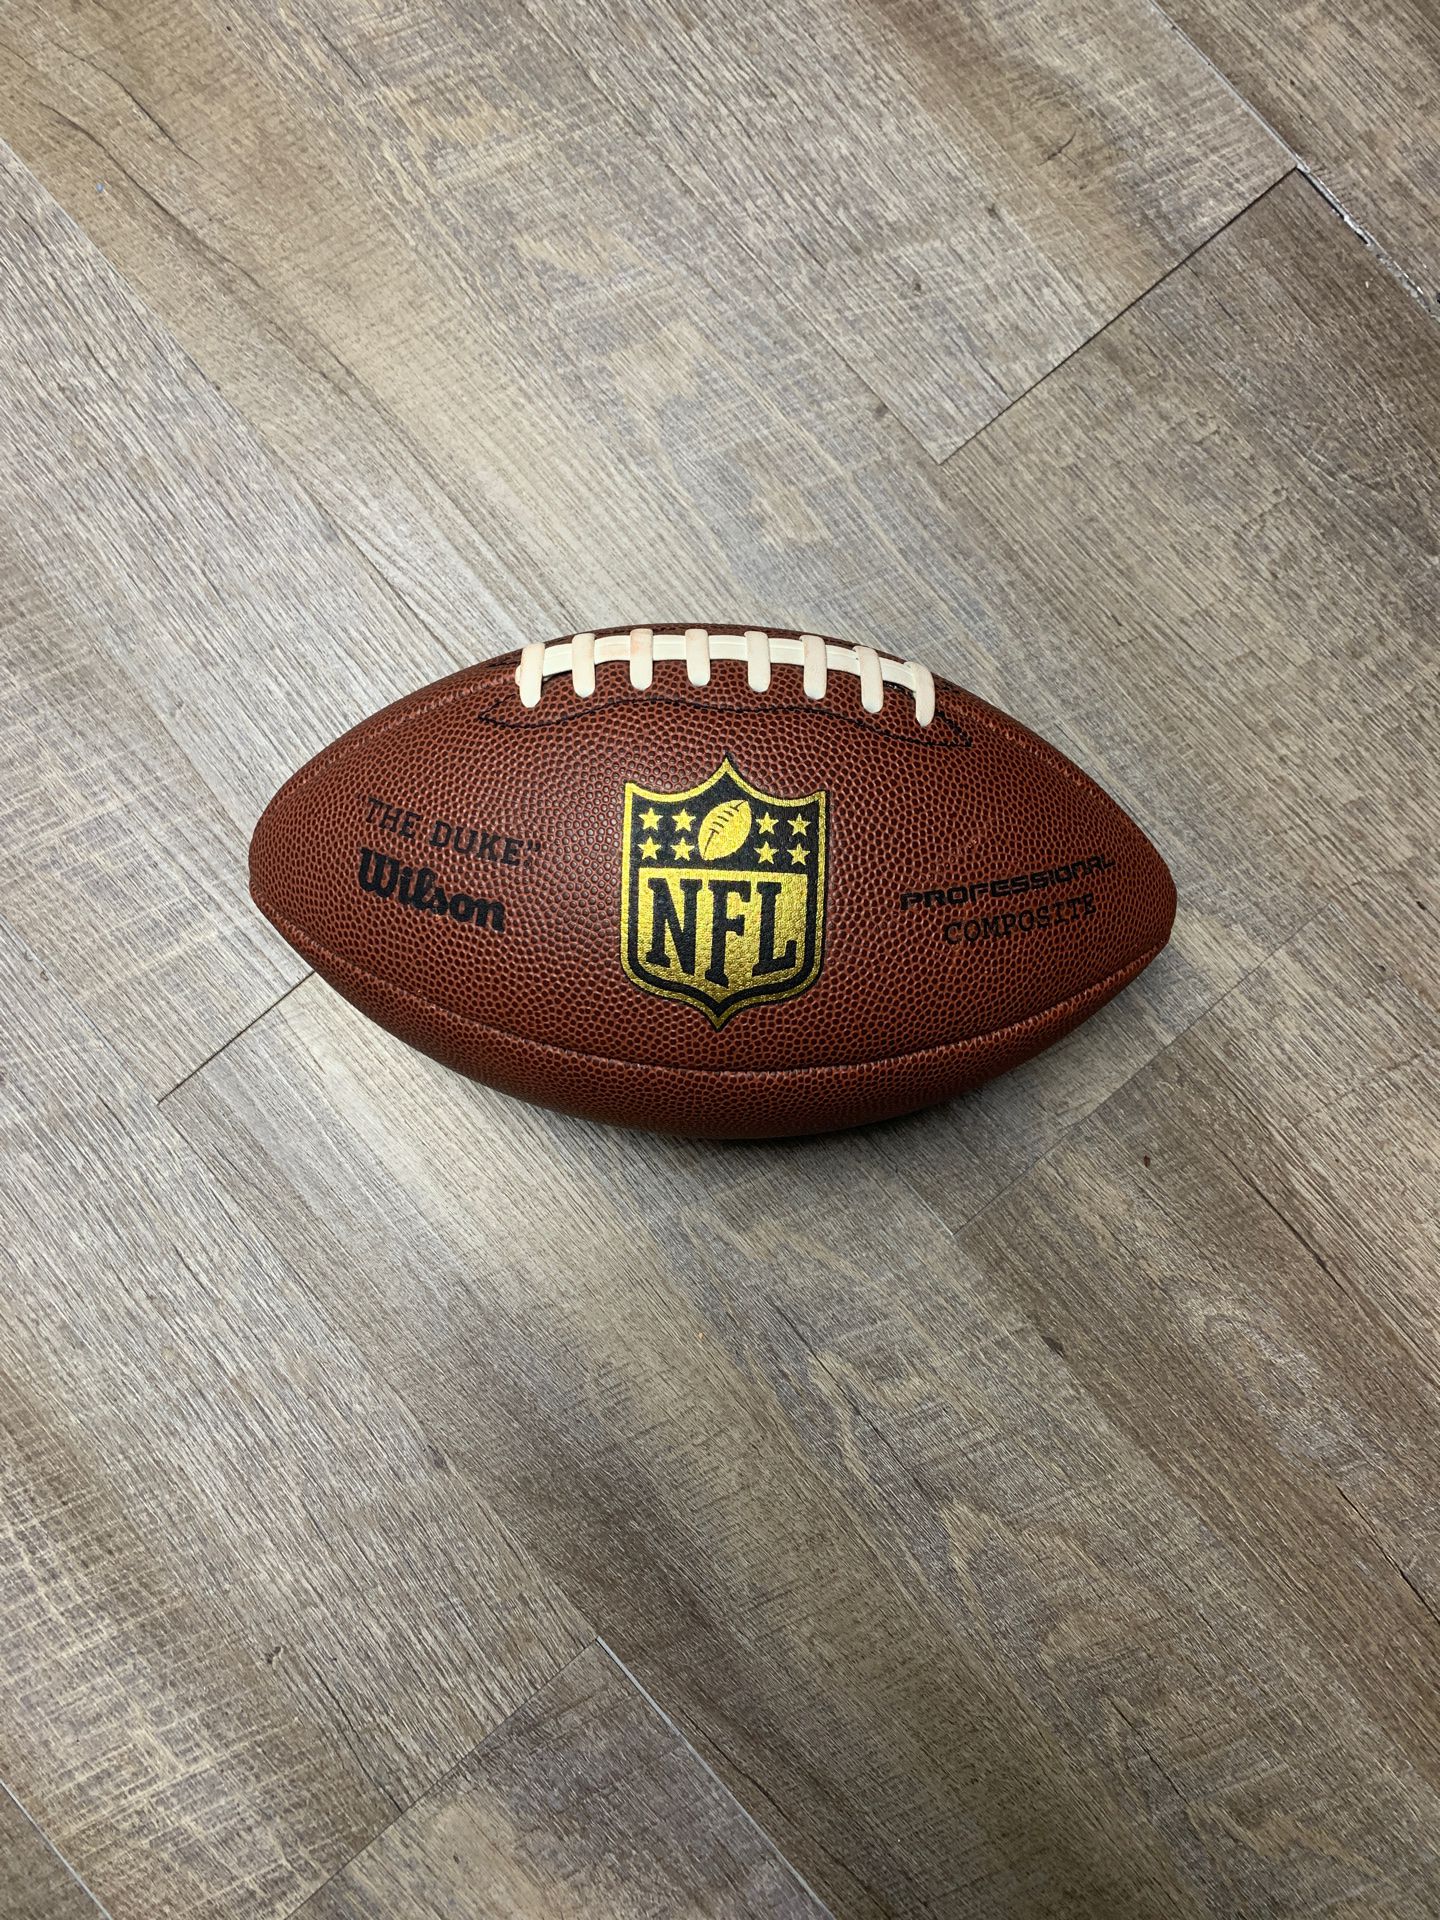 NFL “The Duke” Wilson Football (Brand New)